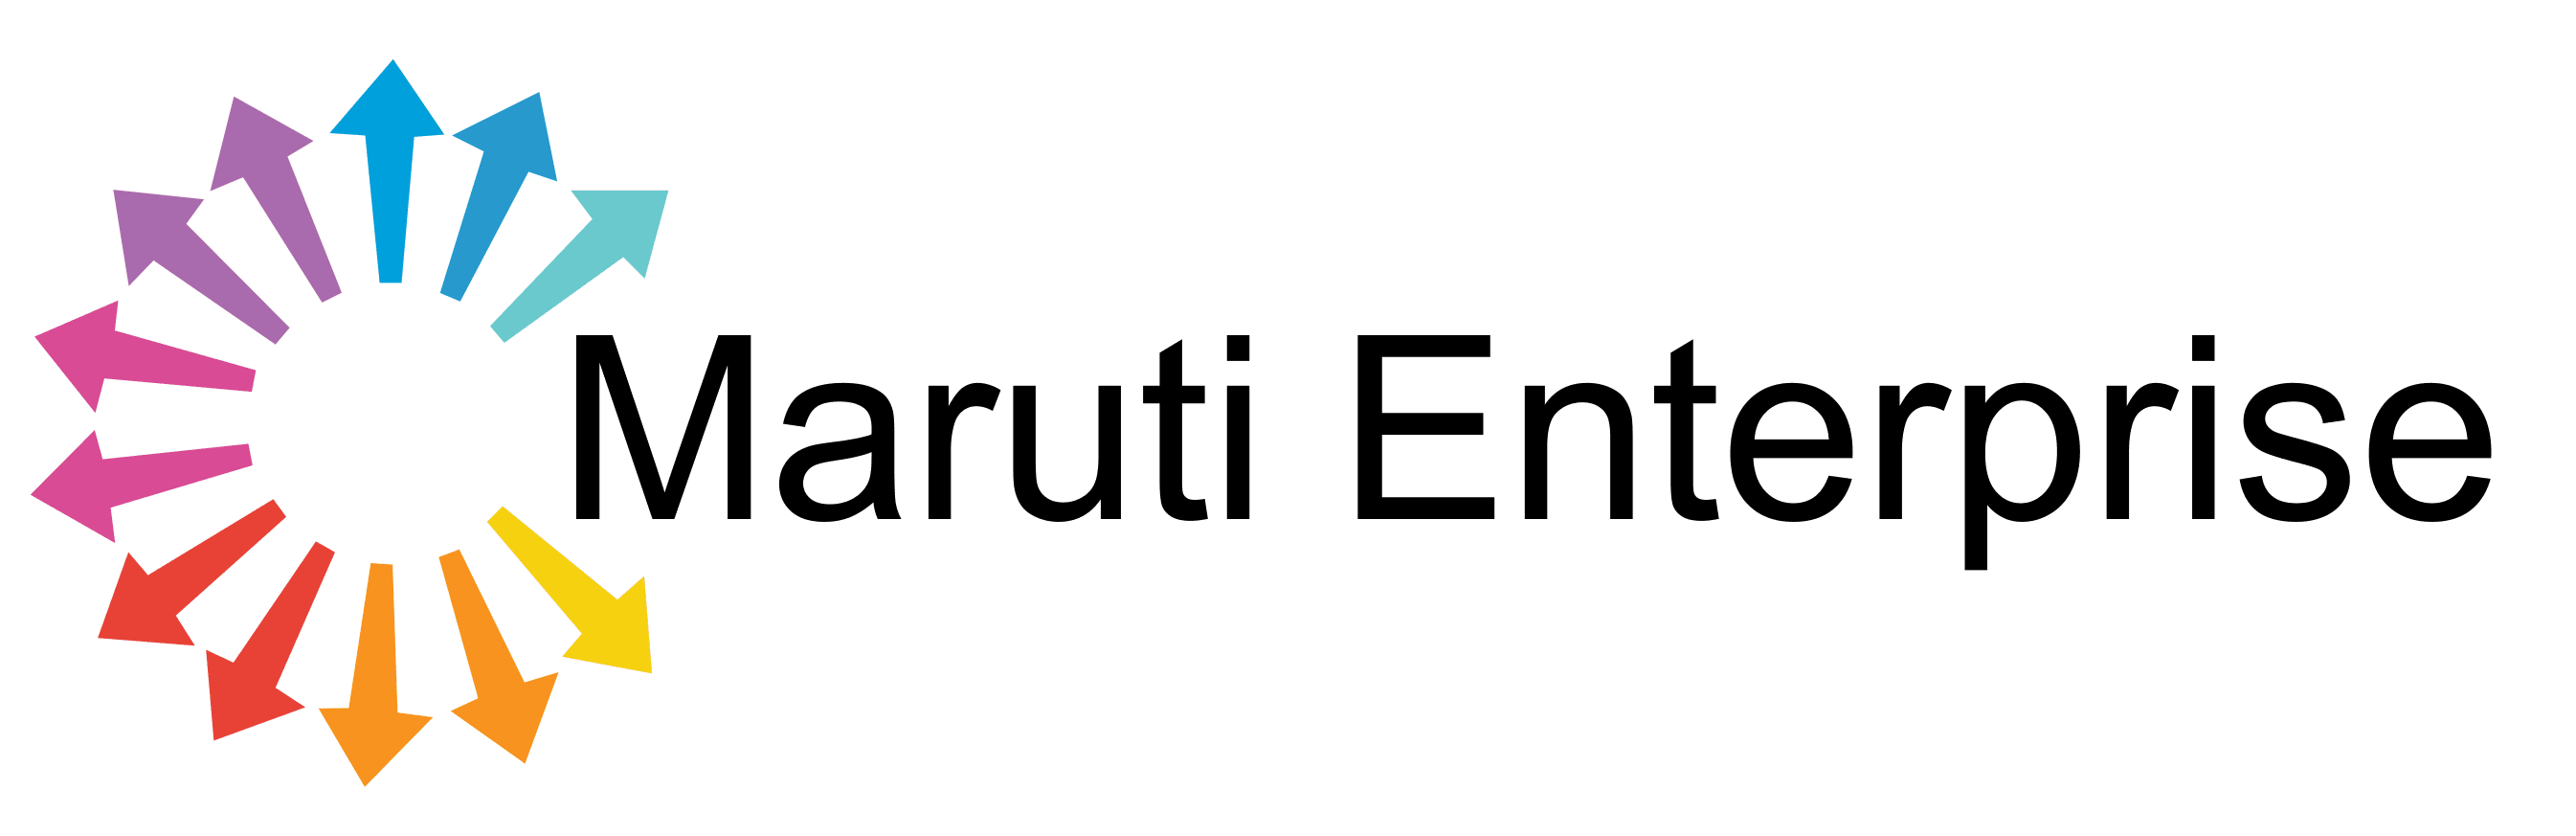 Maruti Enterprise